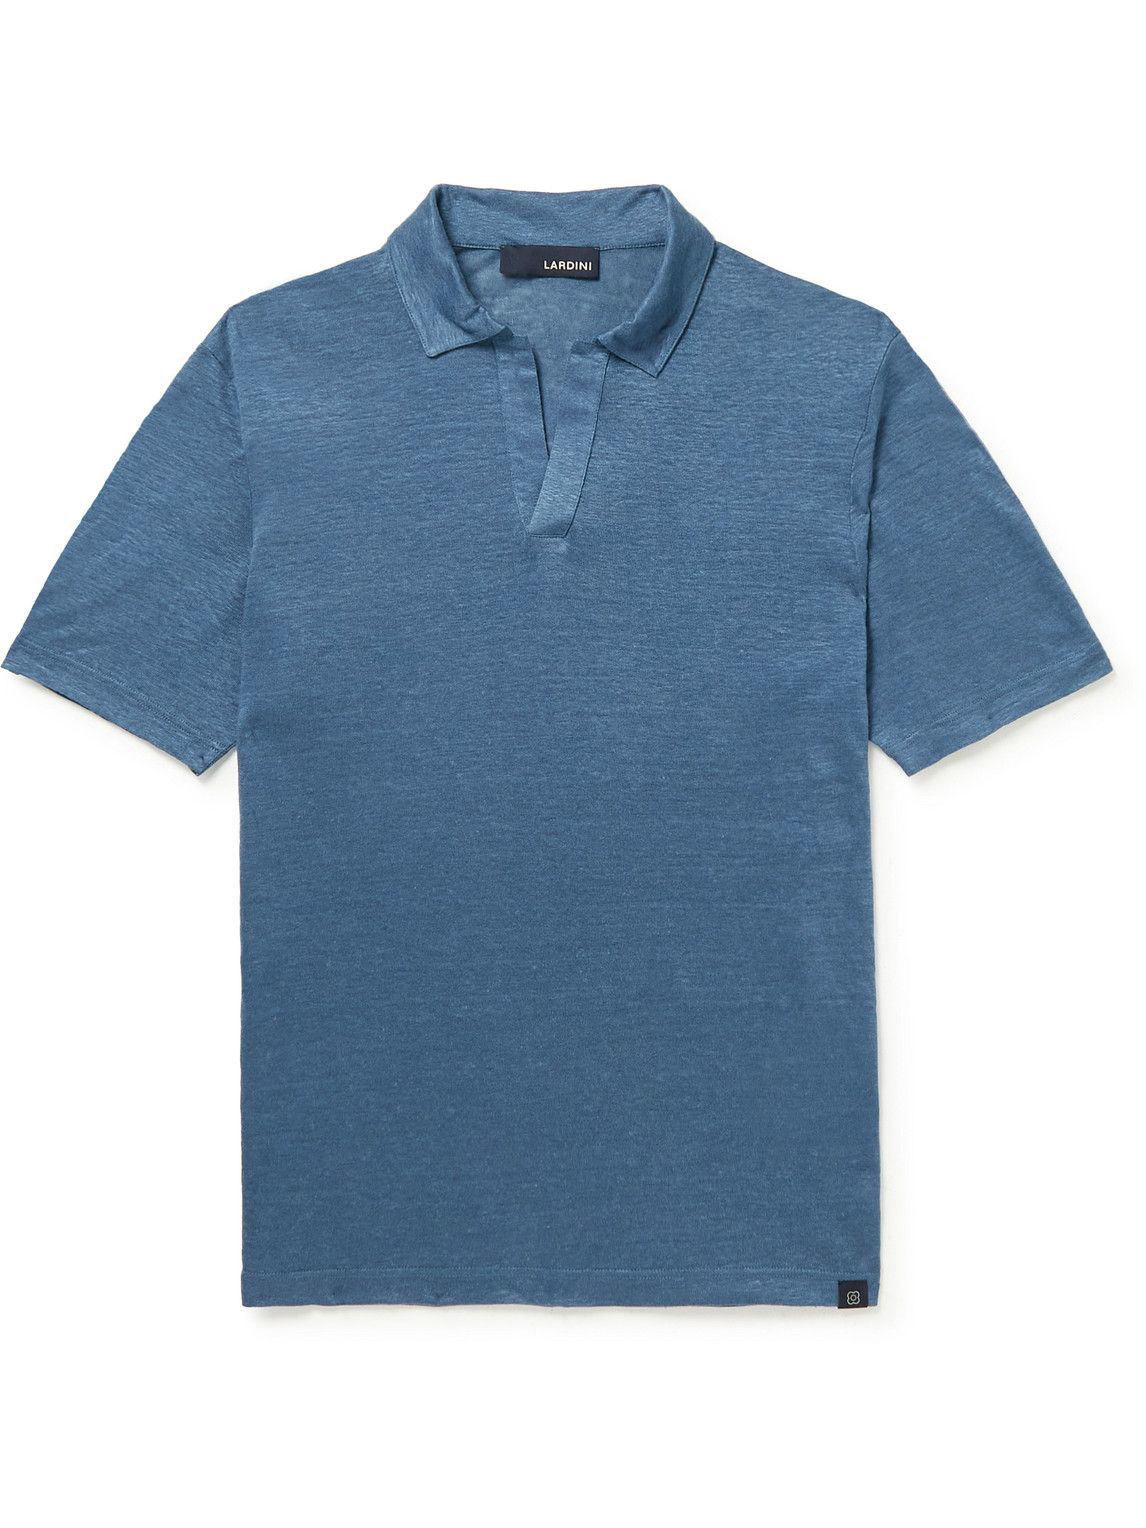 Lardini - Linen Polo Shirt - Blue Lardini